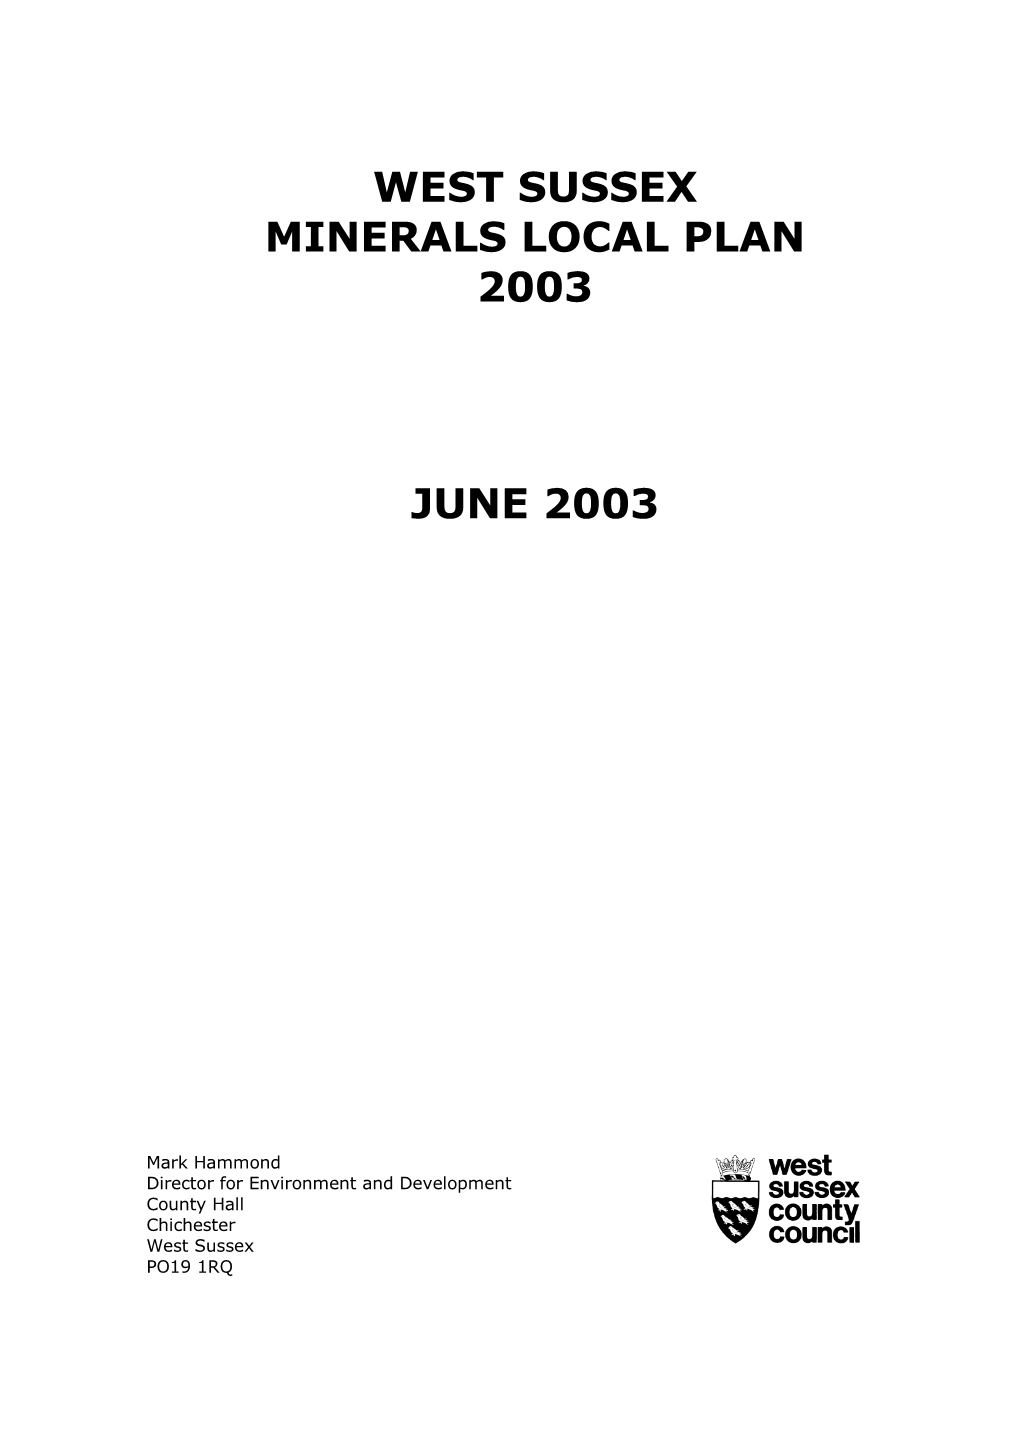 West Sussex Minerals Local Plan 2003